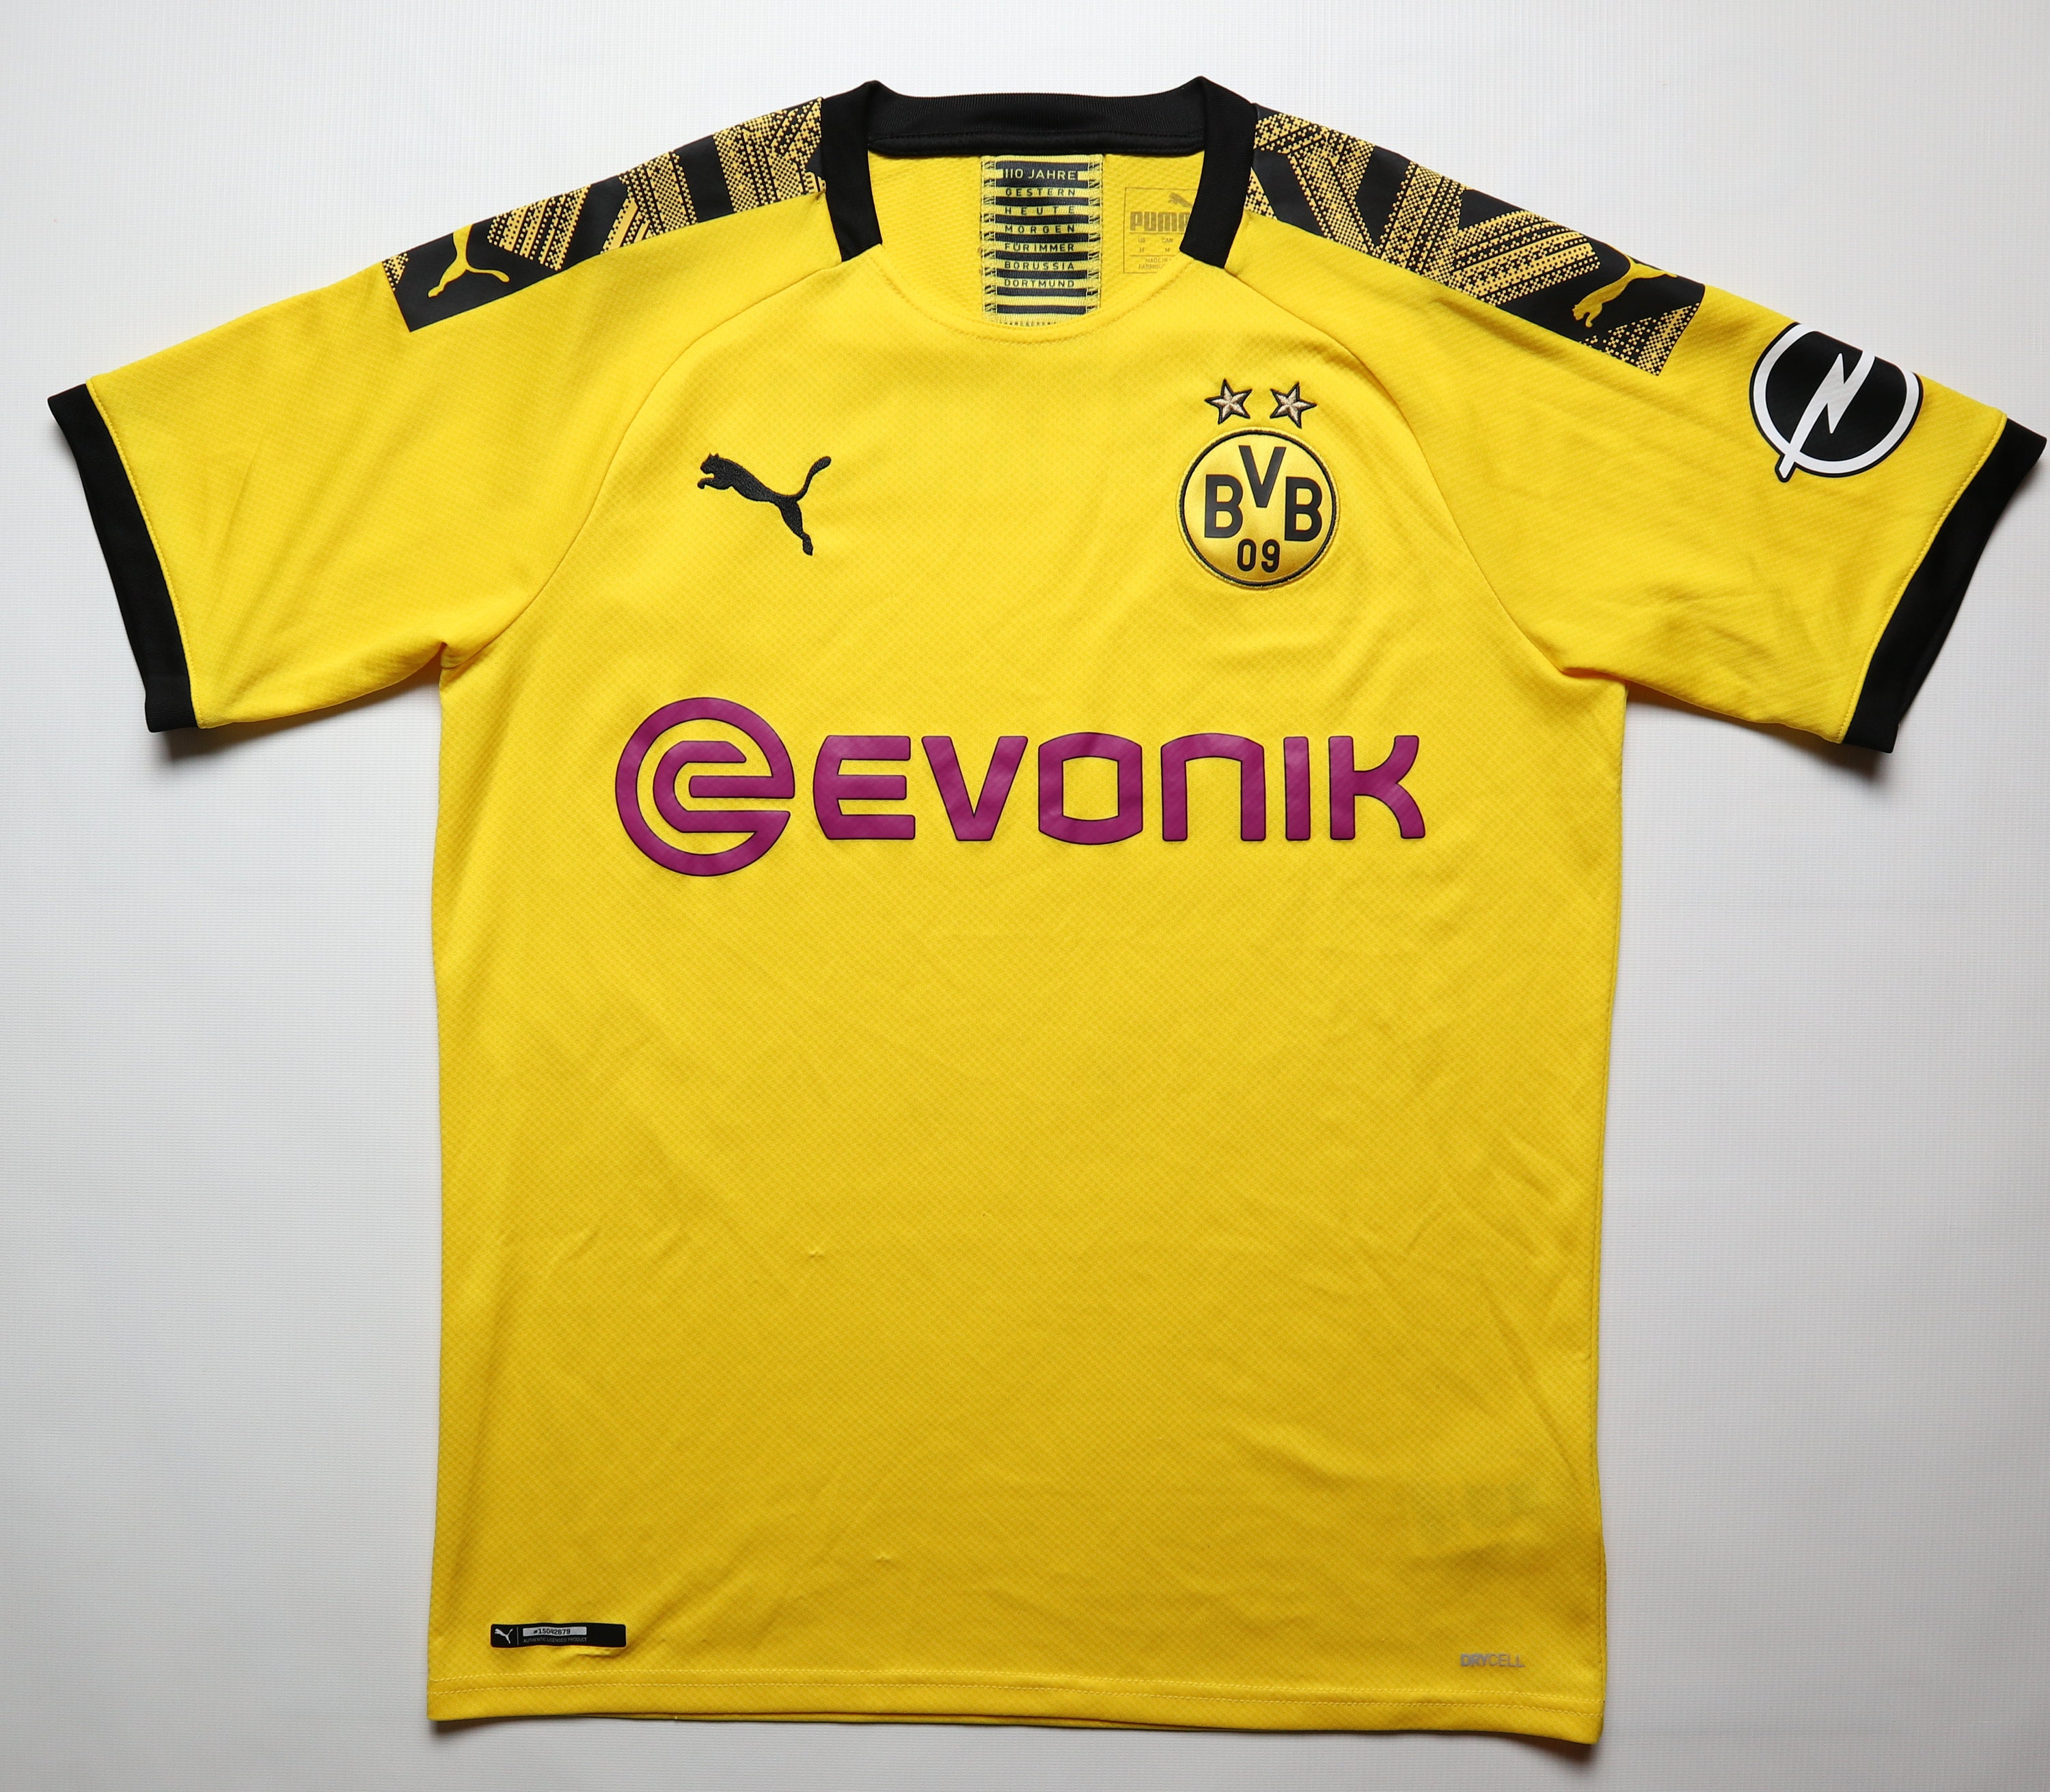 BVB Dortmund 2019/2020 Home Football Soccer Jersey Sweden